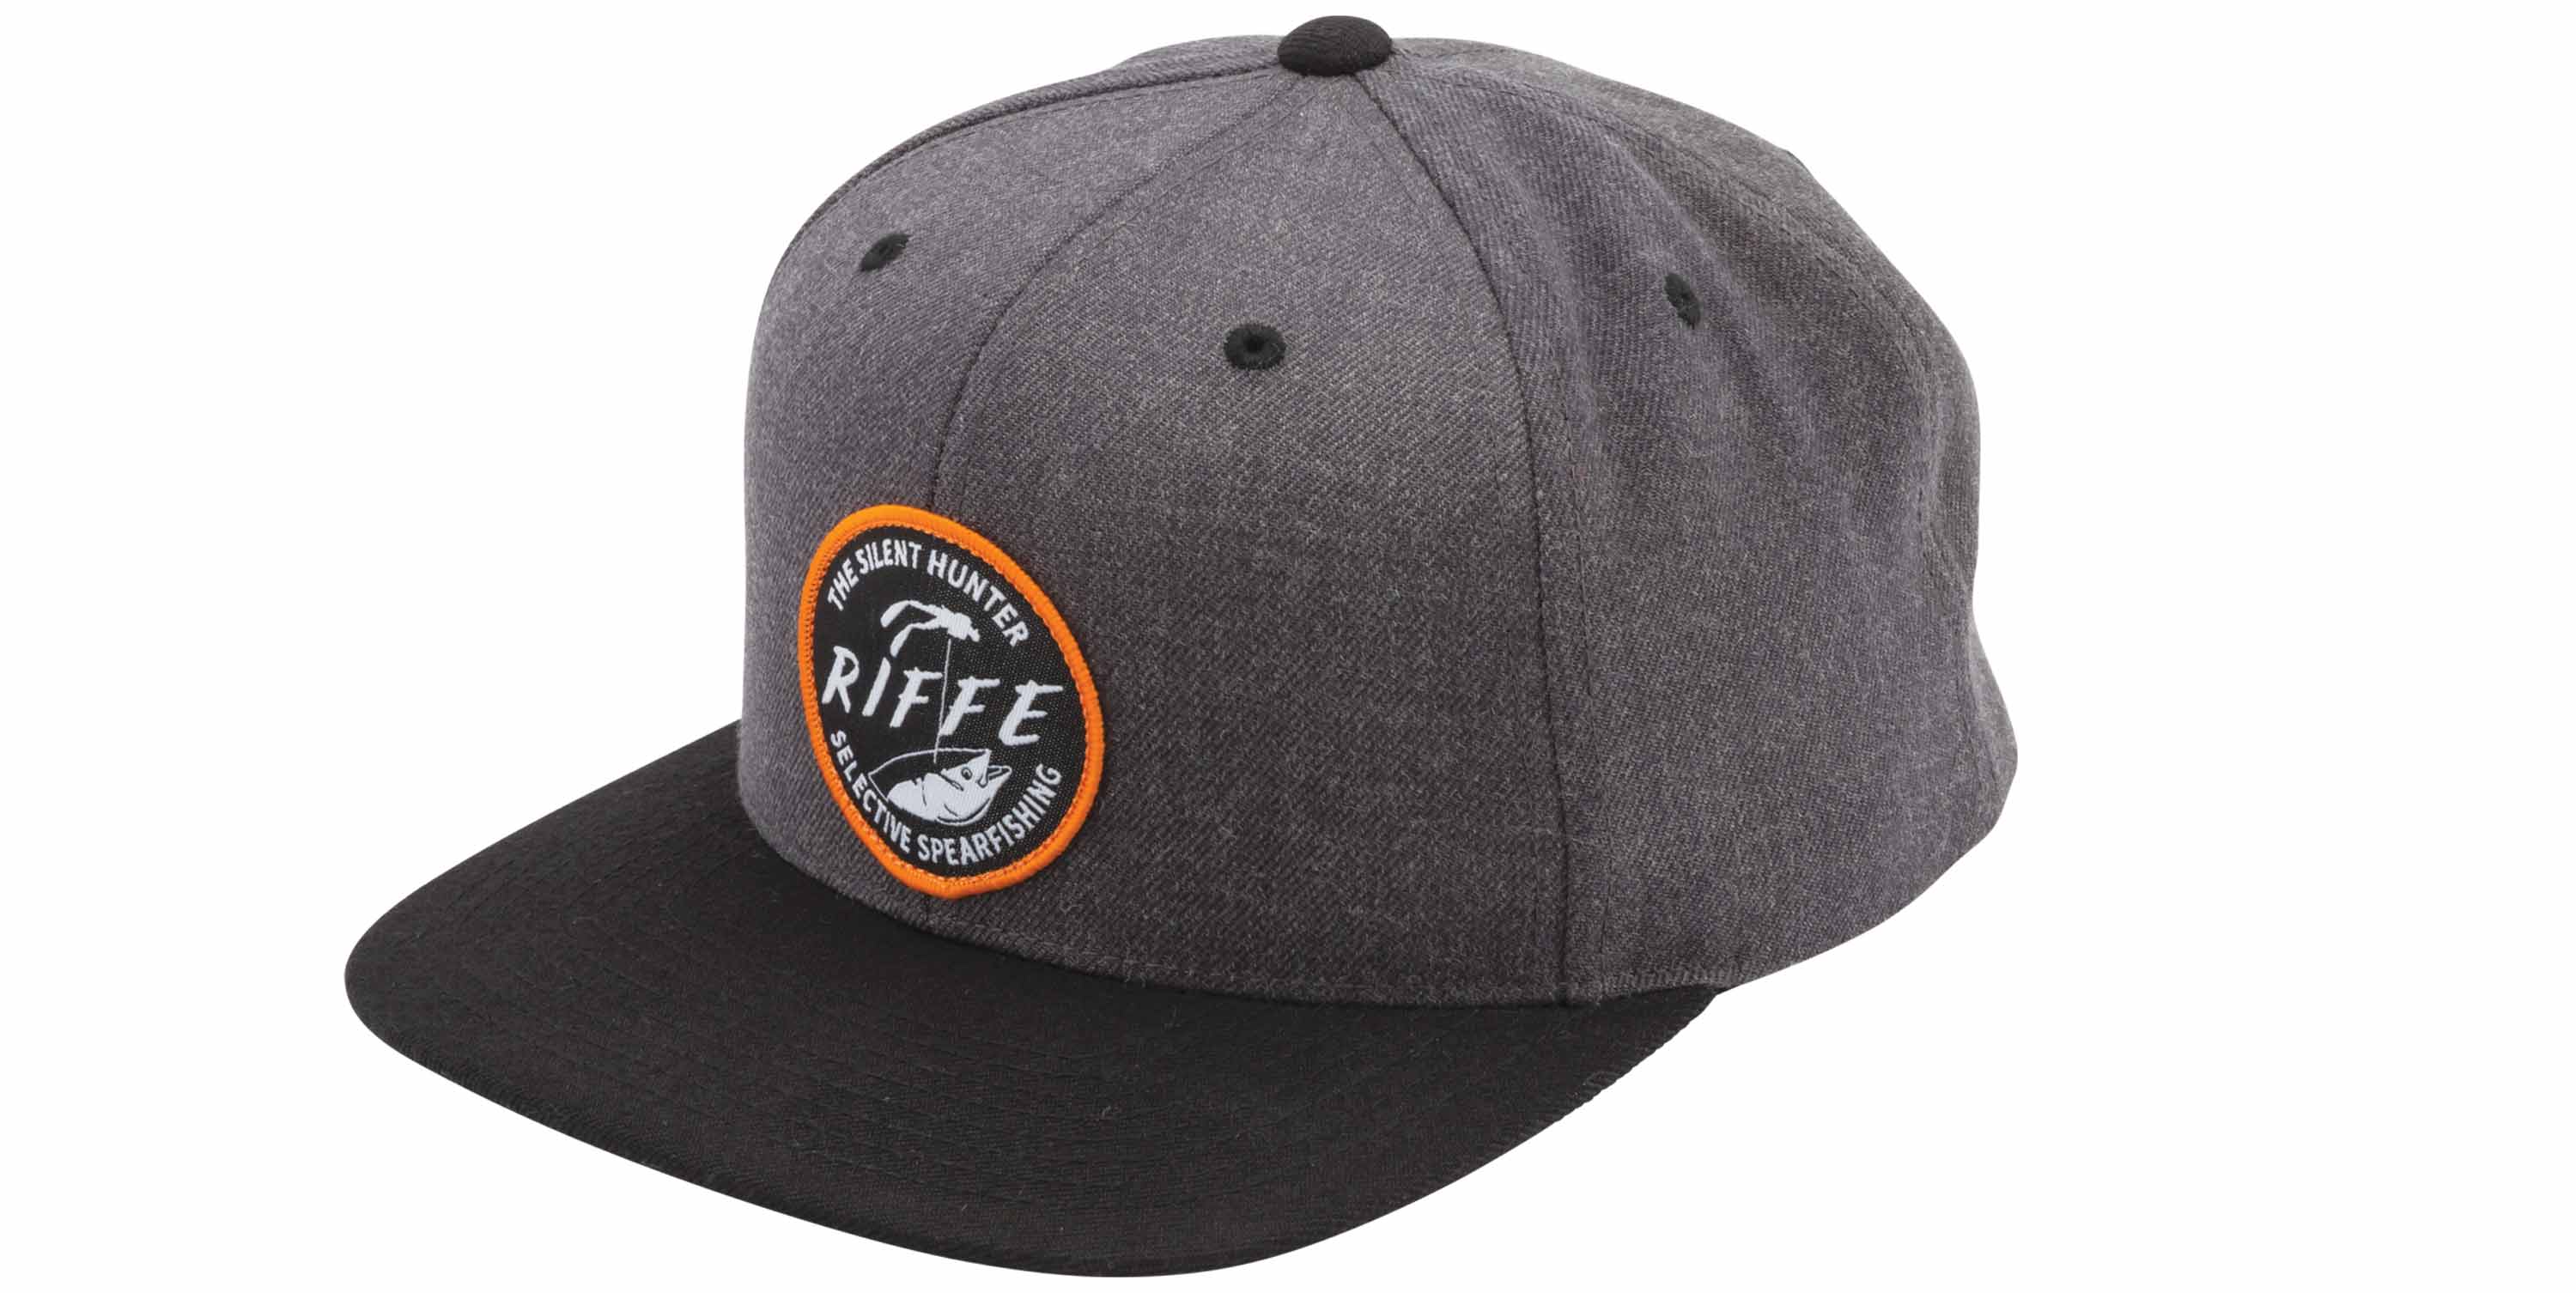 Poke Hat – RIFFE Web Store